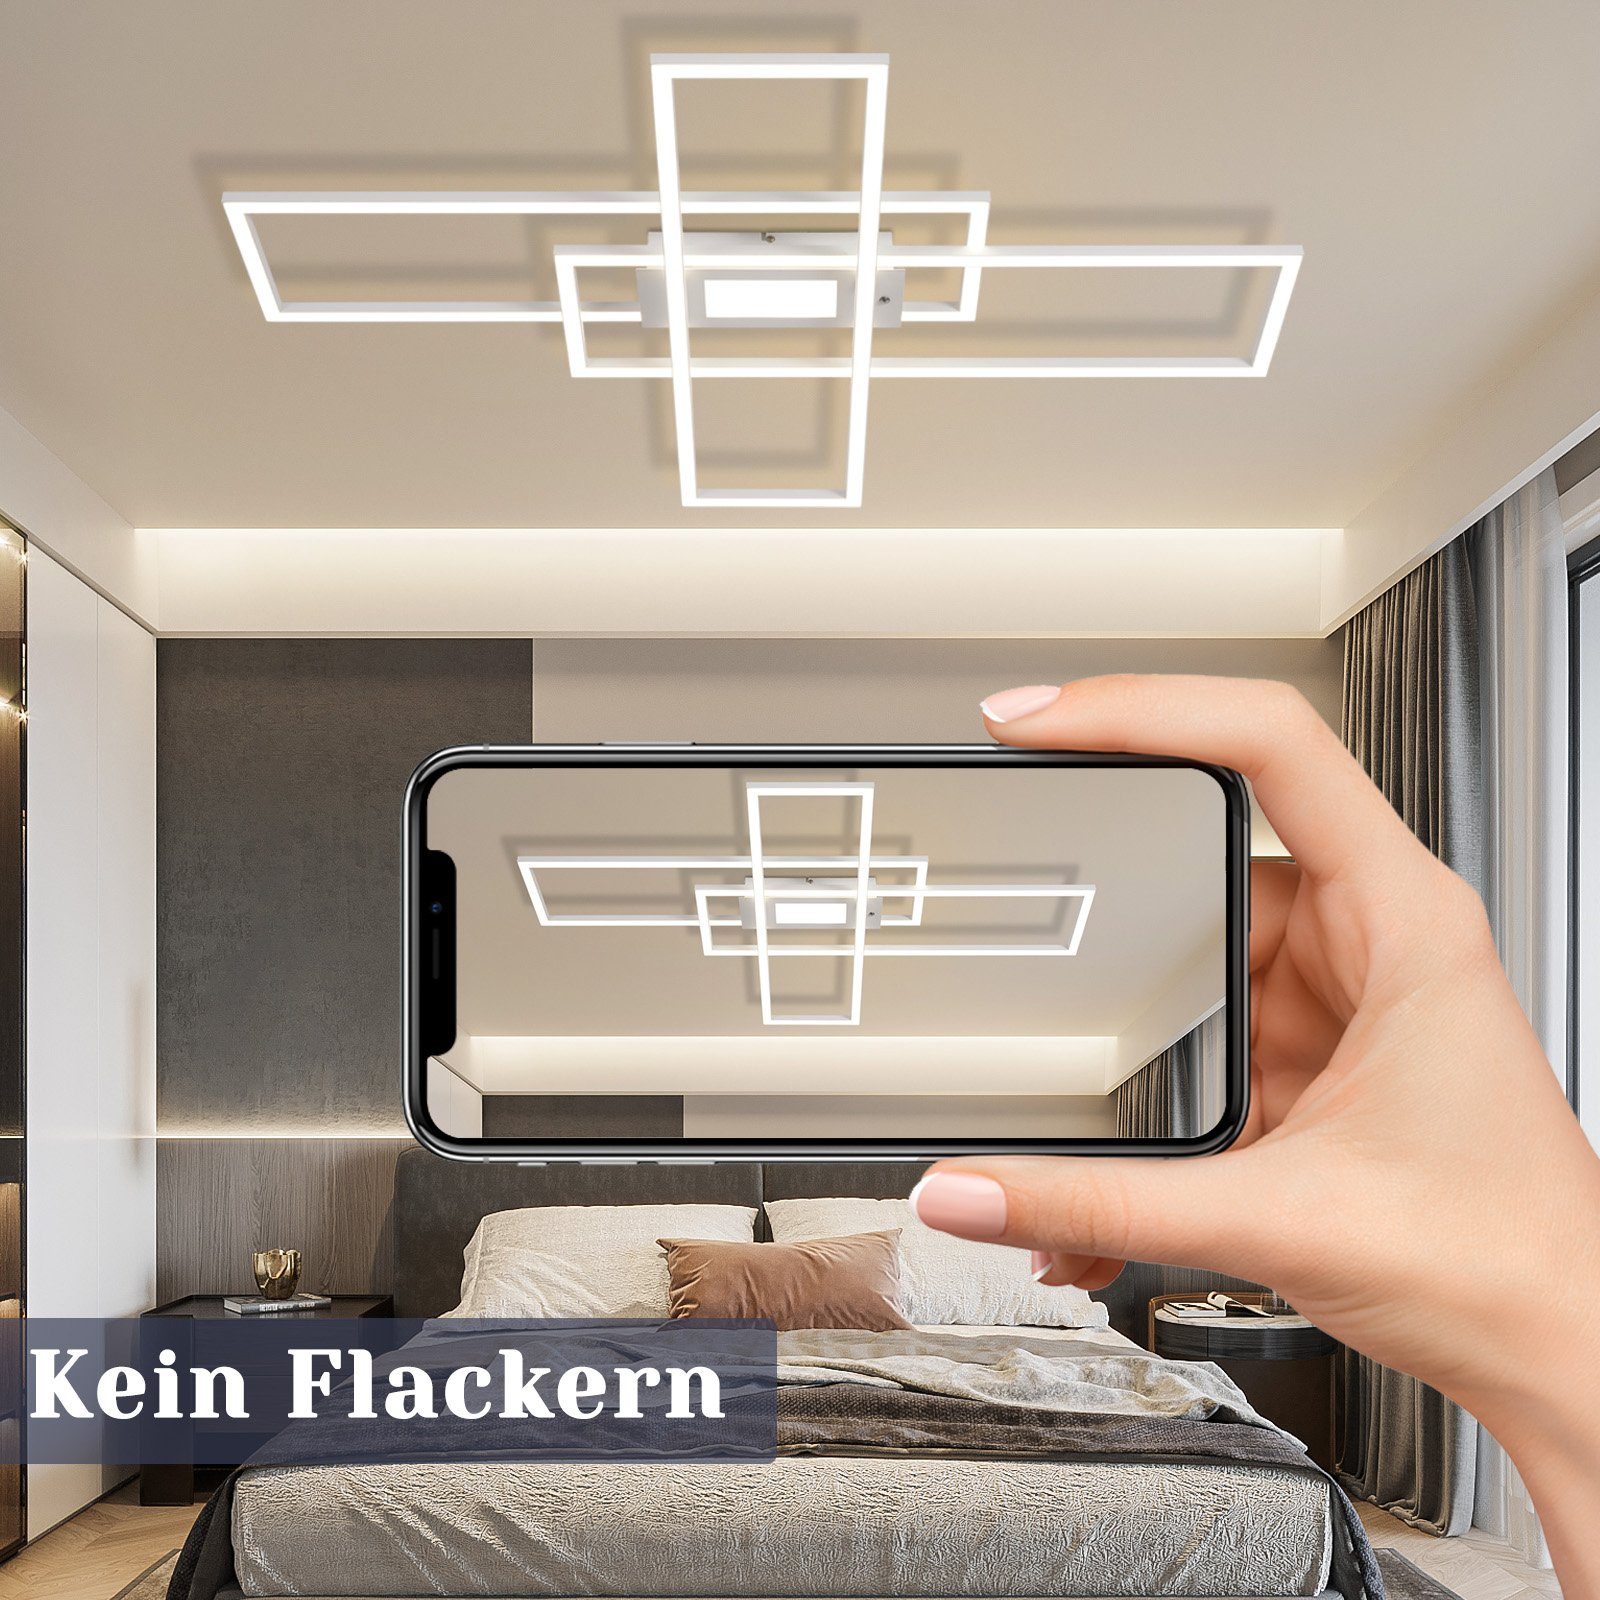 50W Wohnzimmer Design, Modern ZMH Wohnzimmerlampe Weiß integriert, Deckenbeleuchtung Deckenleuchte Schlafzimmerlampe Schlafzimmer LED Fernbedienung mit LED fest